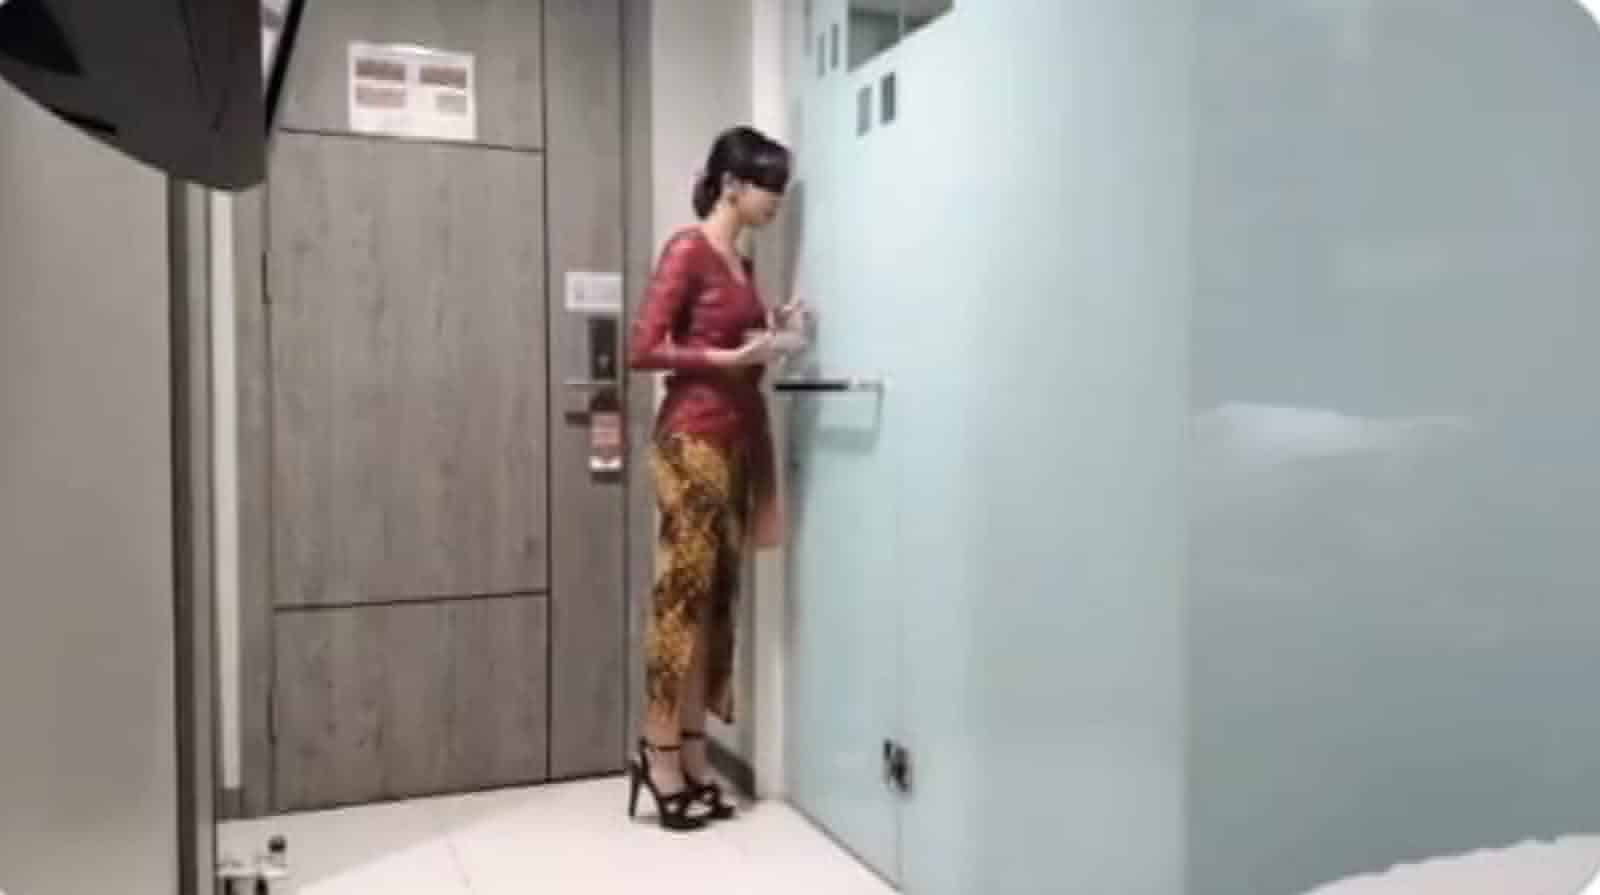 Polda Jatim Tangkap Pemeran Video Dewasa "Kebaya Merah" yang Viral